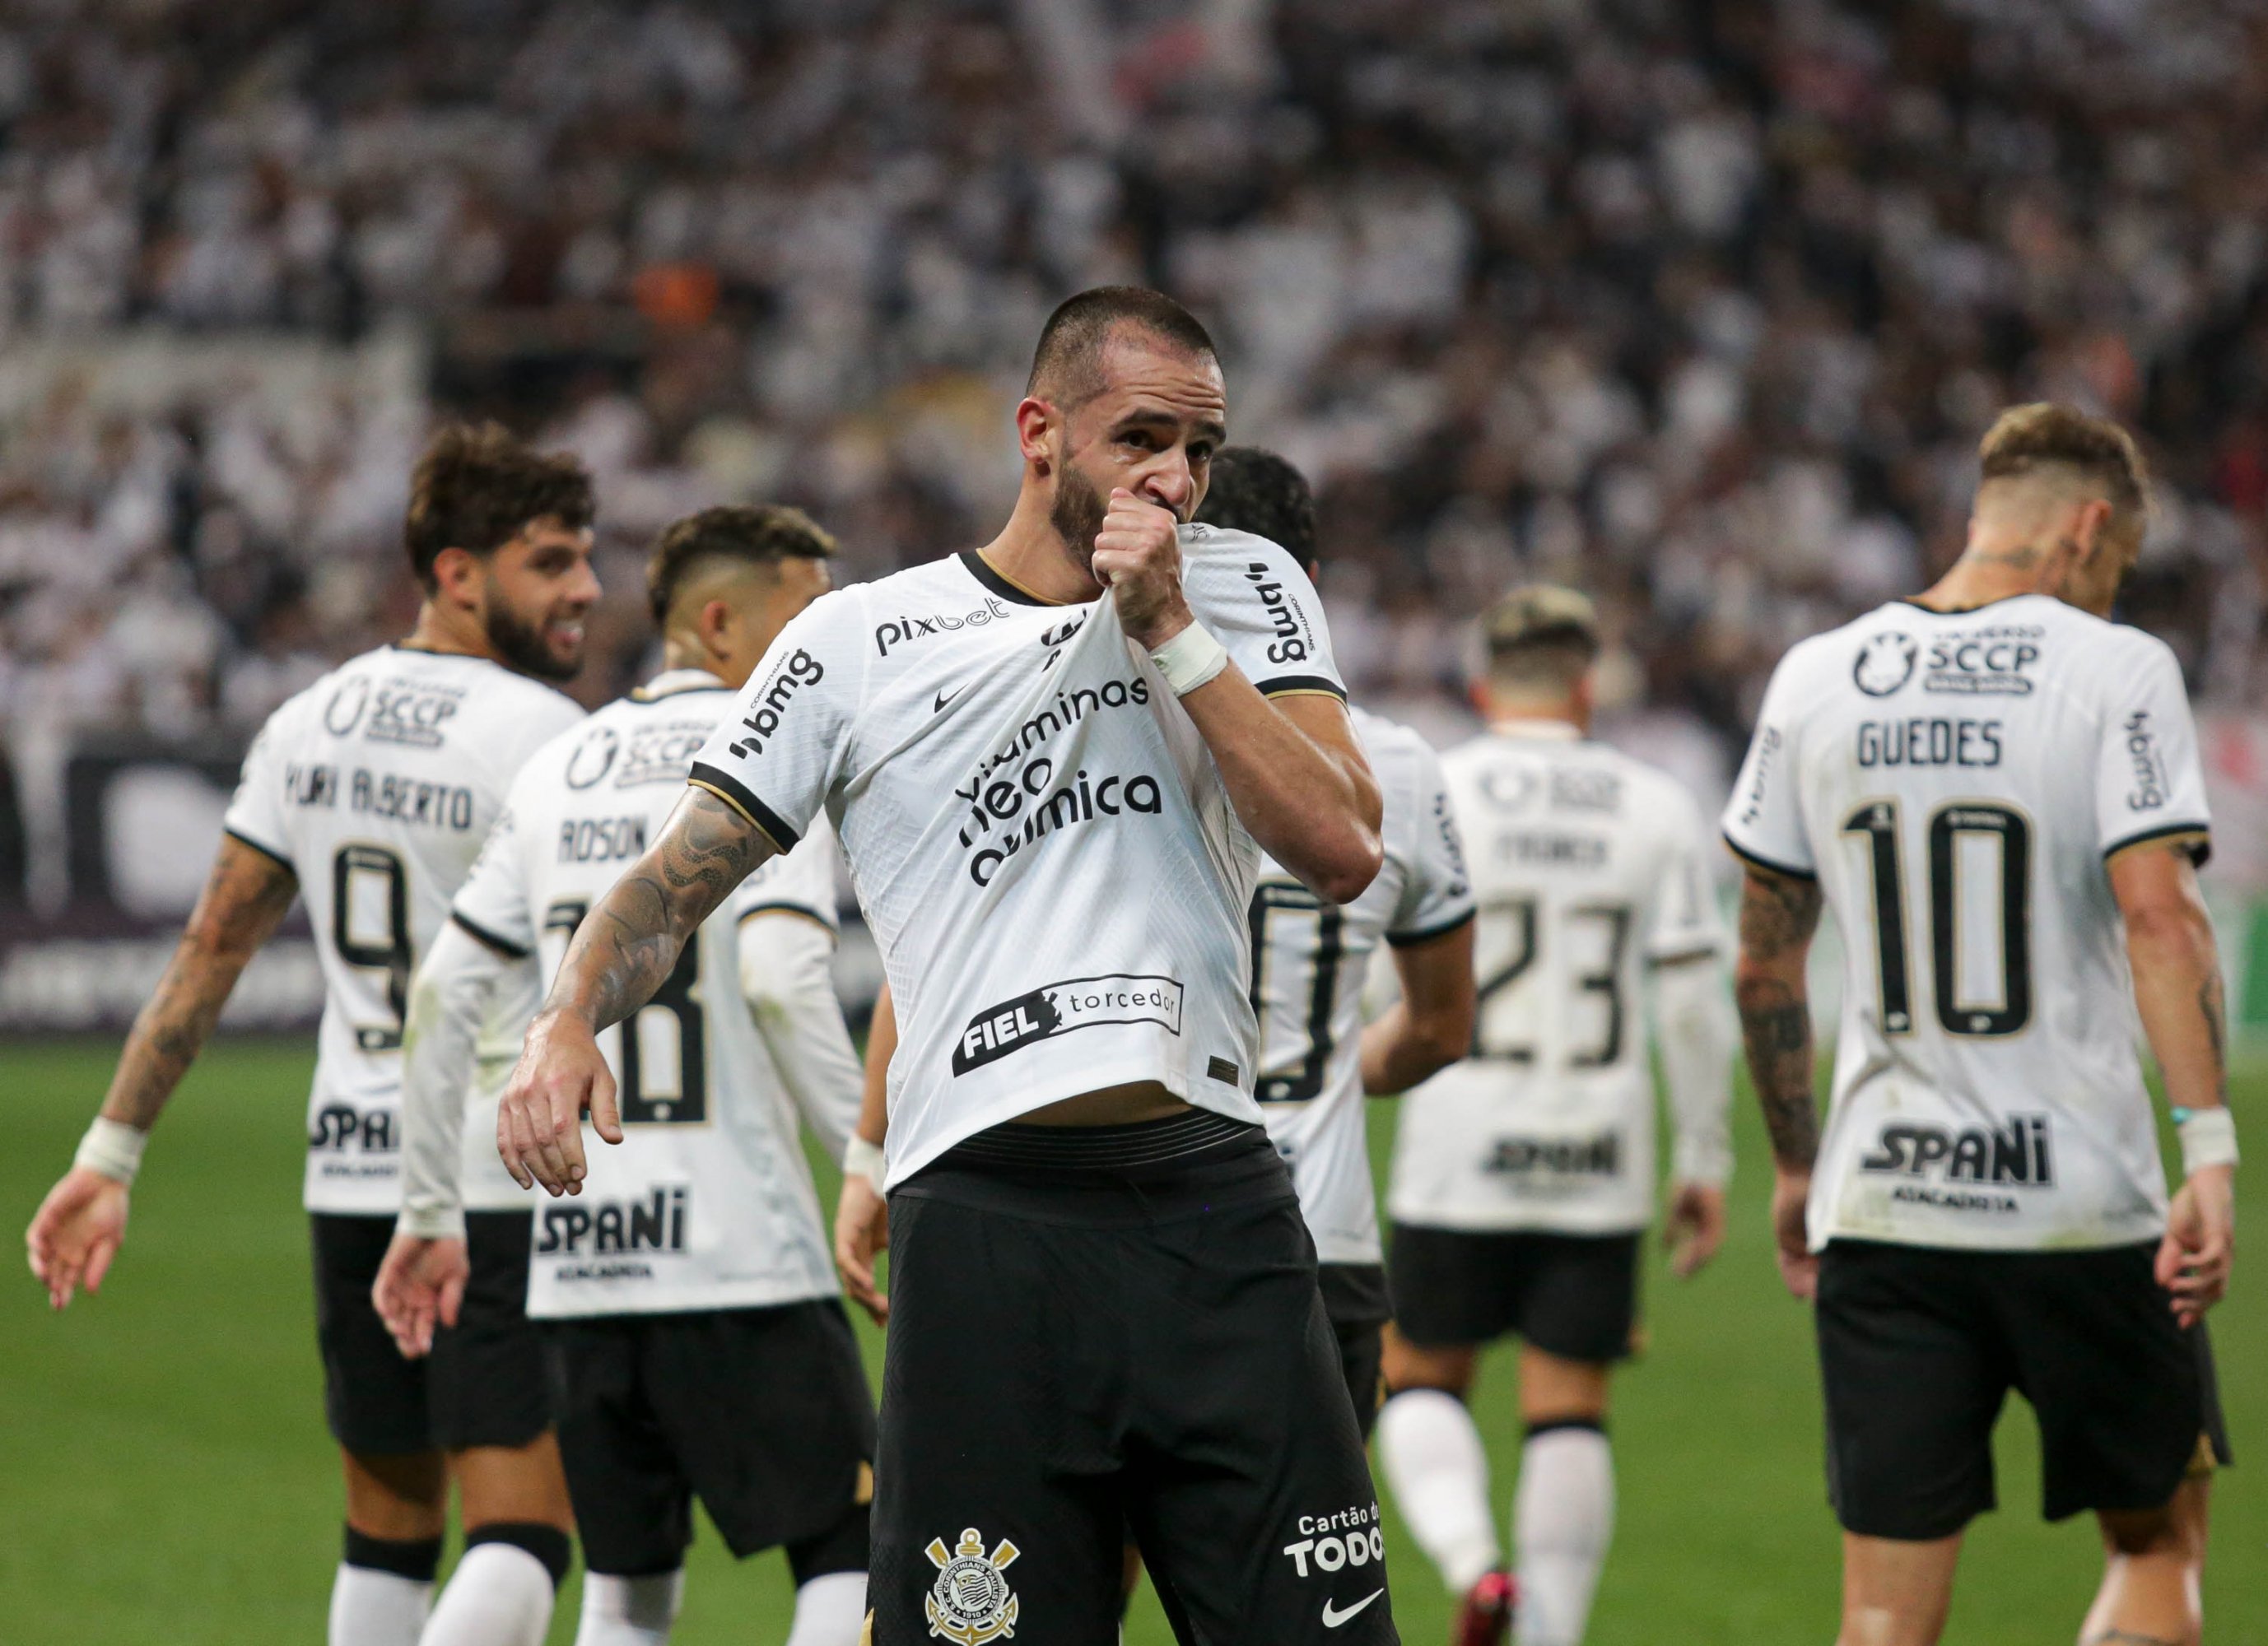 Saiba como o interesse da seleção italiana por Carlos Augusto pode ajudar o  Corinthians - Lance!